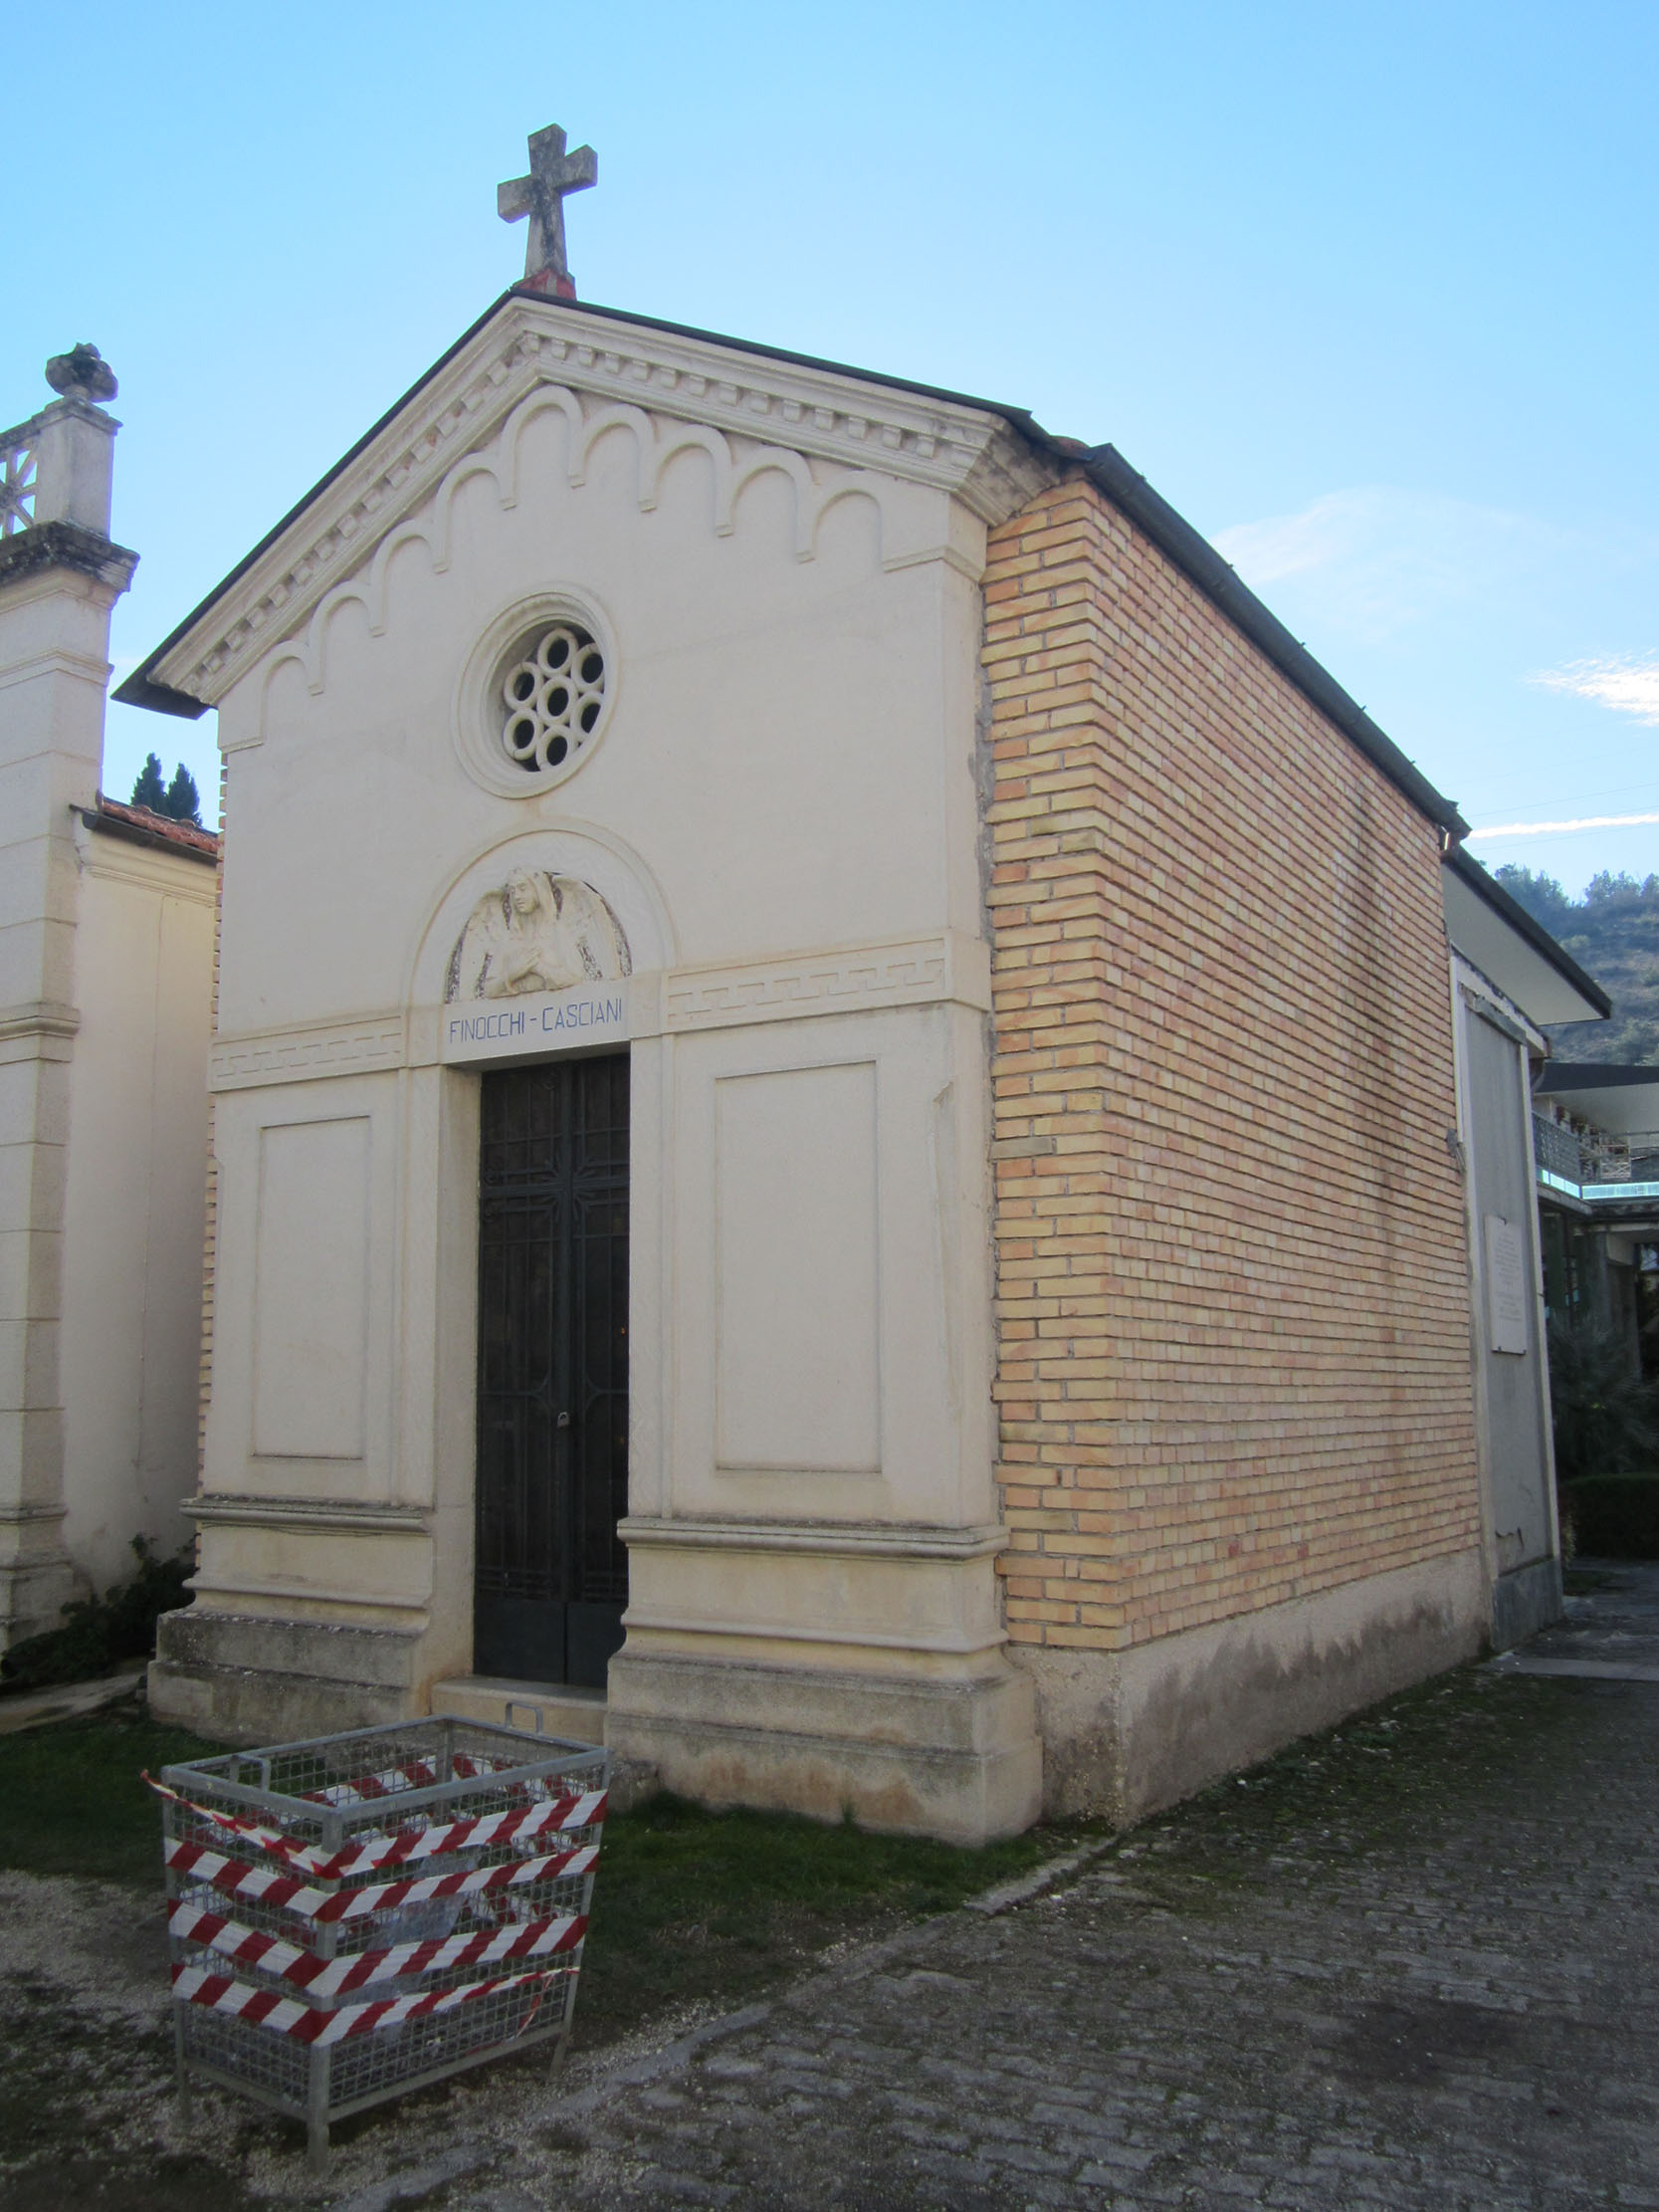 Cappella cimiteriale Finocchi Casciani (cimitero, monumentale) - Sulmona (AQ) 